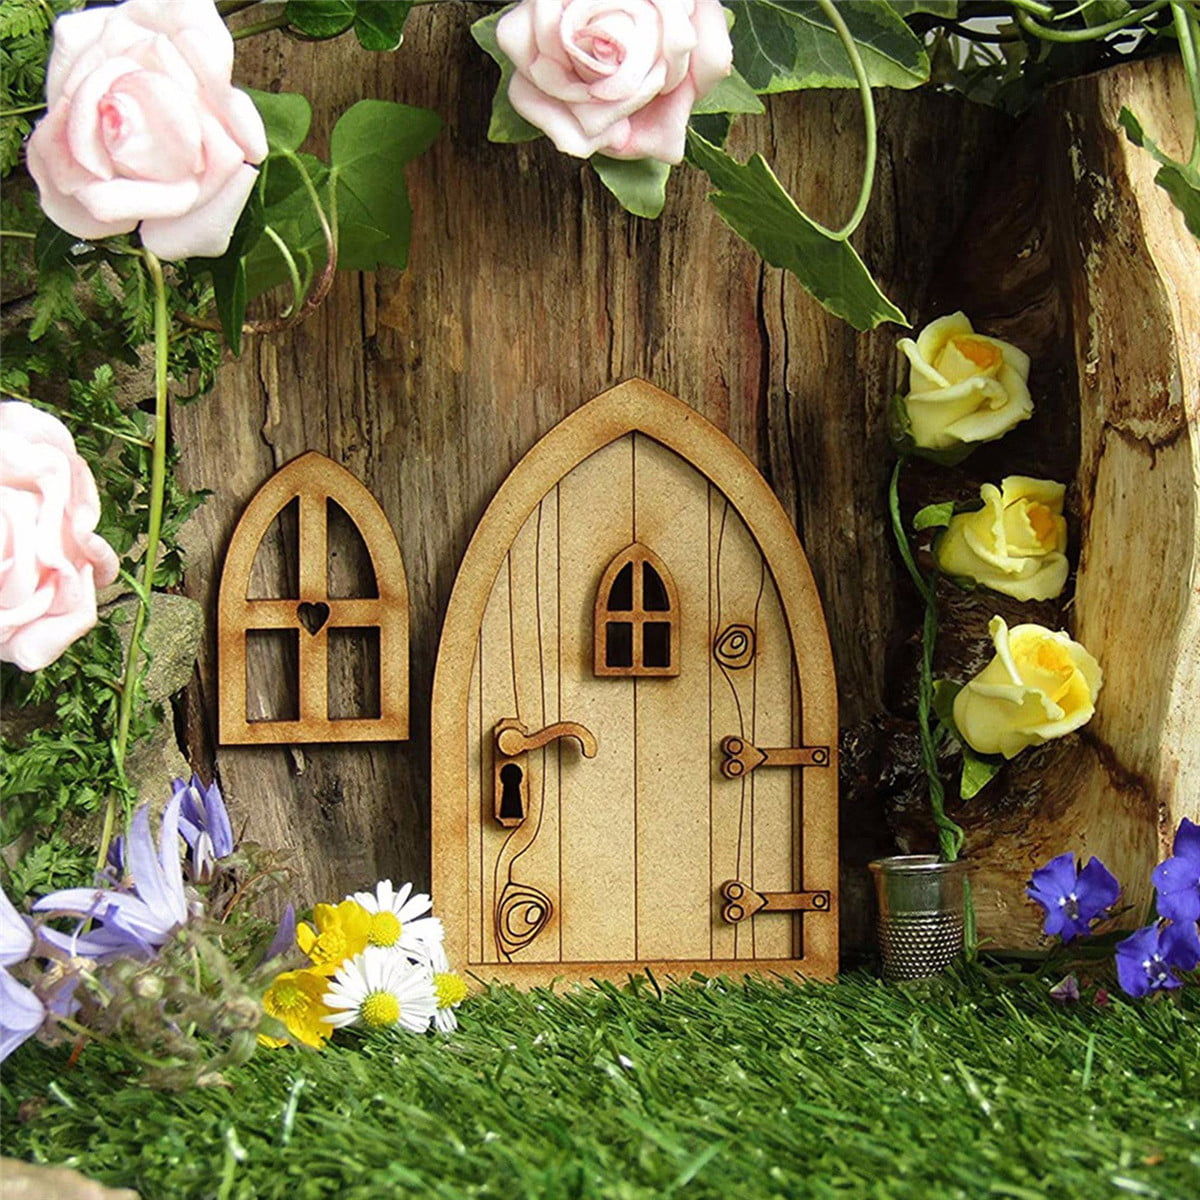 Dollhouse Miniature Fairy Garden Retro Metal Lawn Chair DEEP PINK 